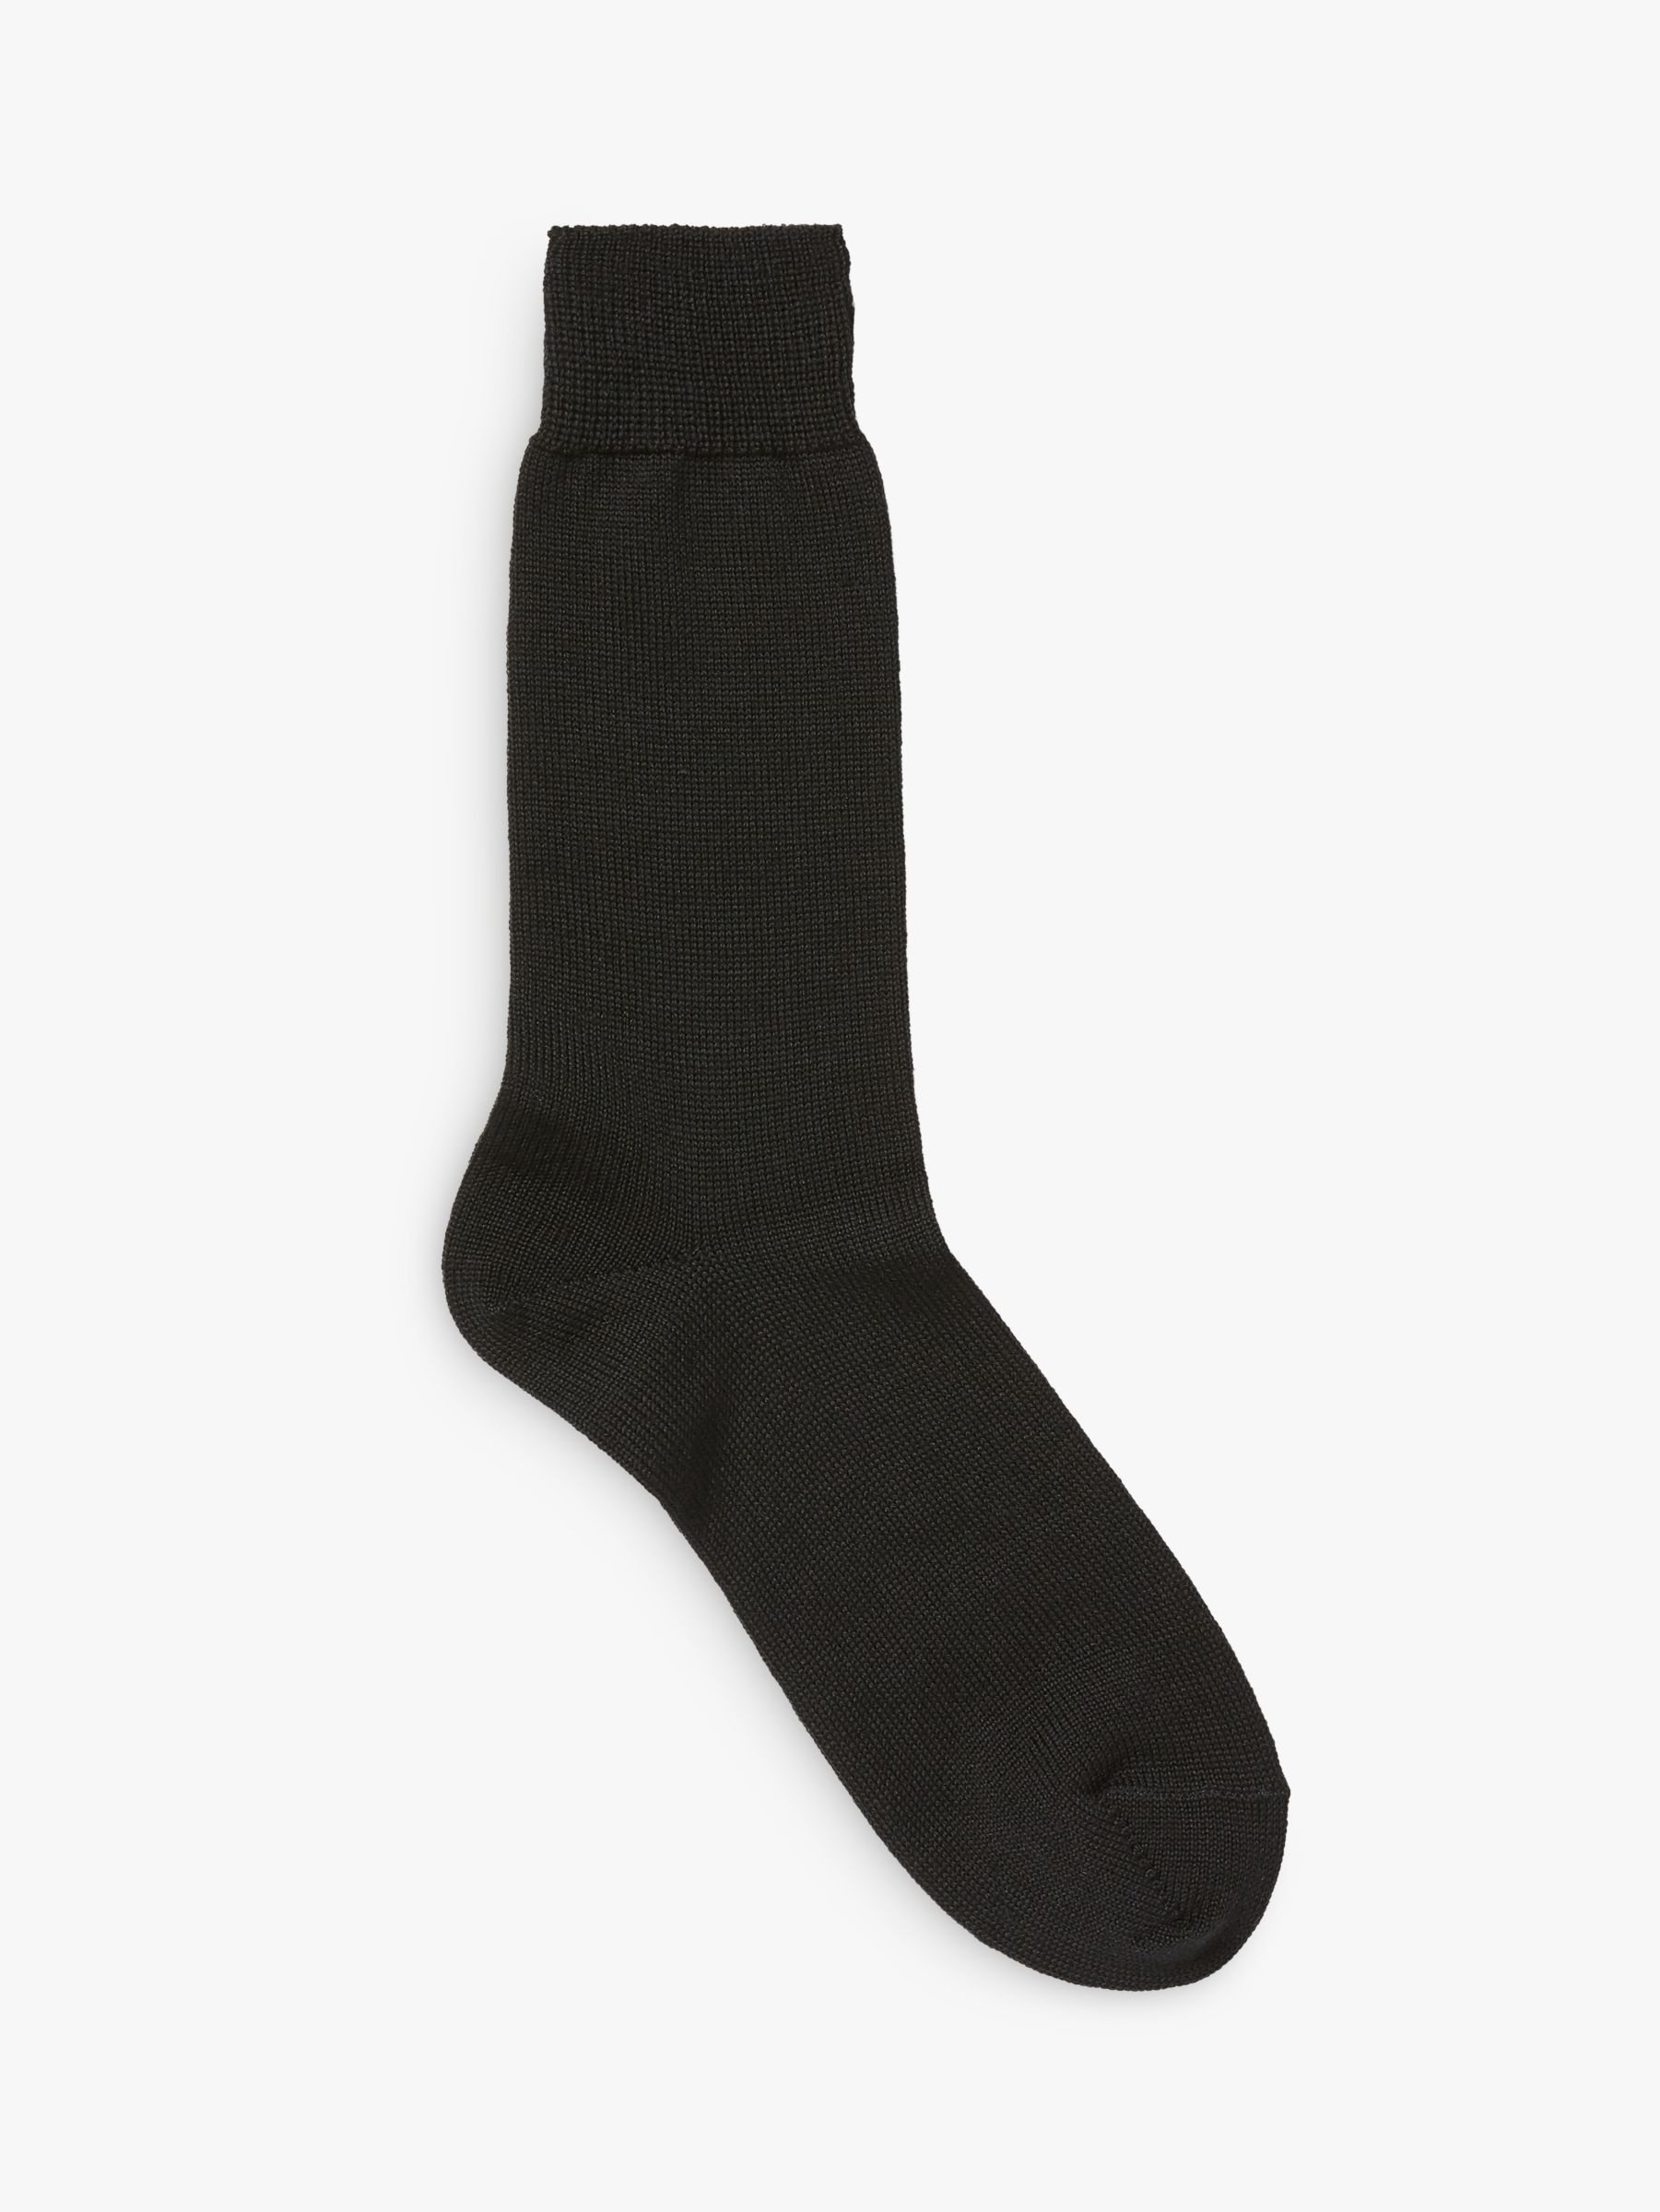 John Lewis & Partners Made in Italy Merino Blend Short Socks, Black, L